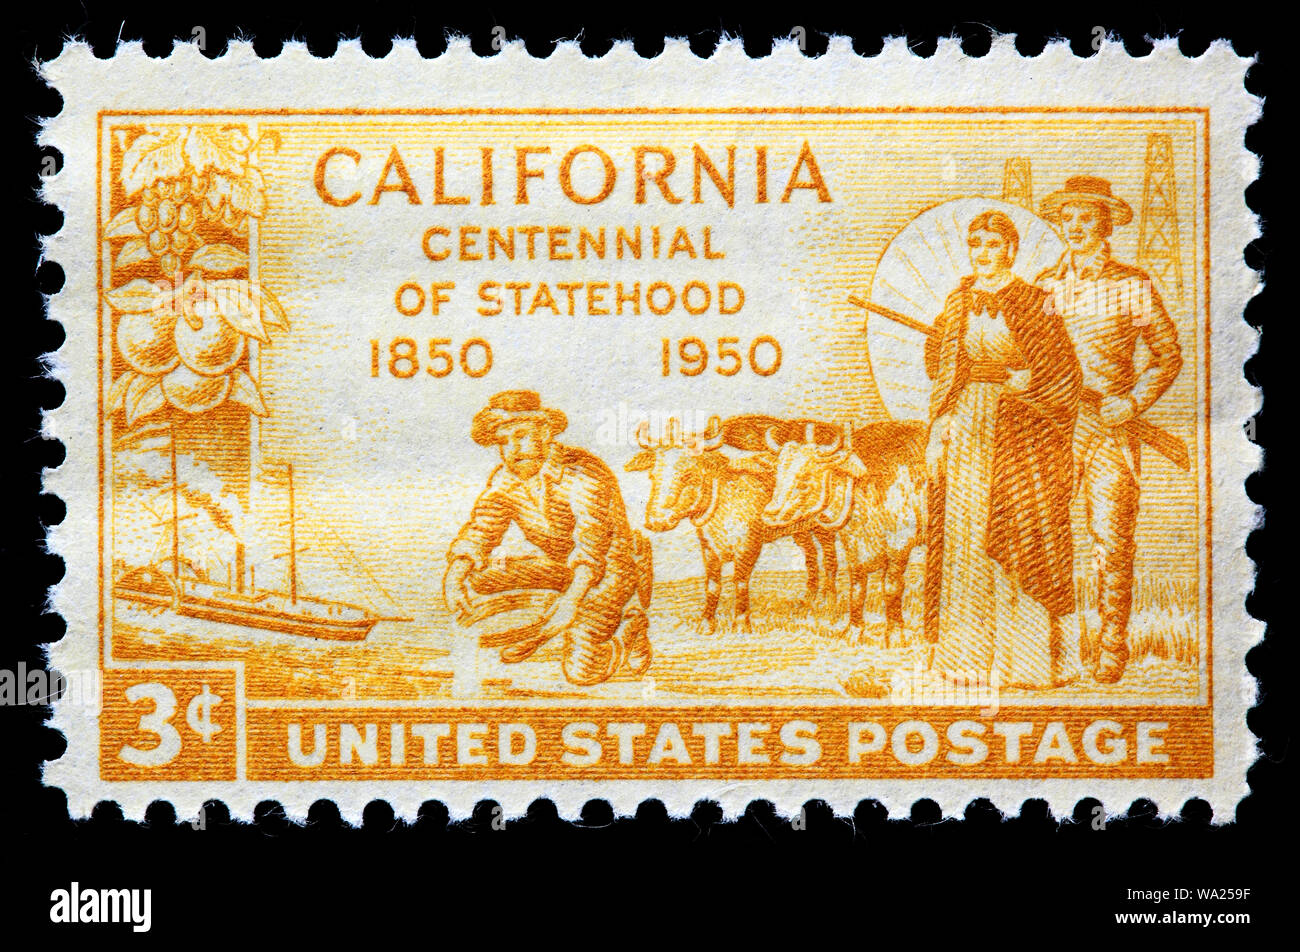 7+ Hundred California Vintage Postal Stamp Royalty-Free Images